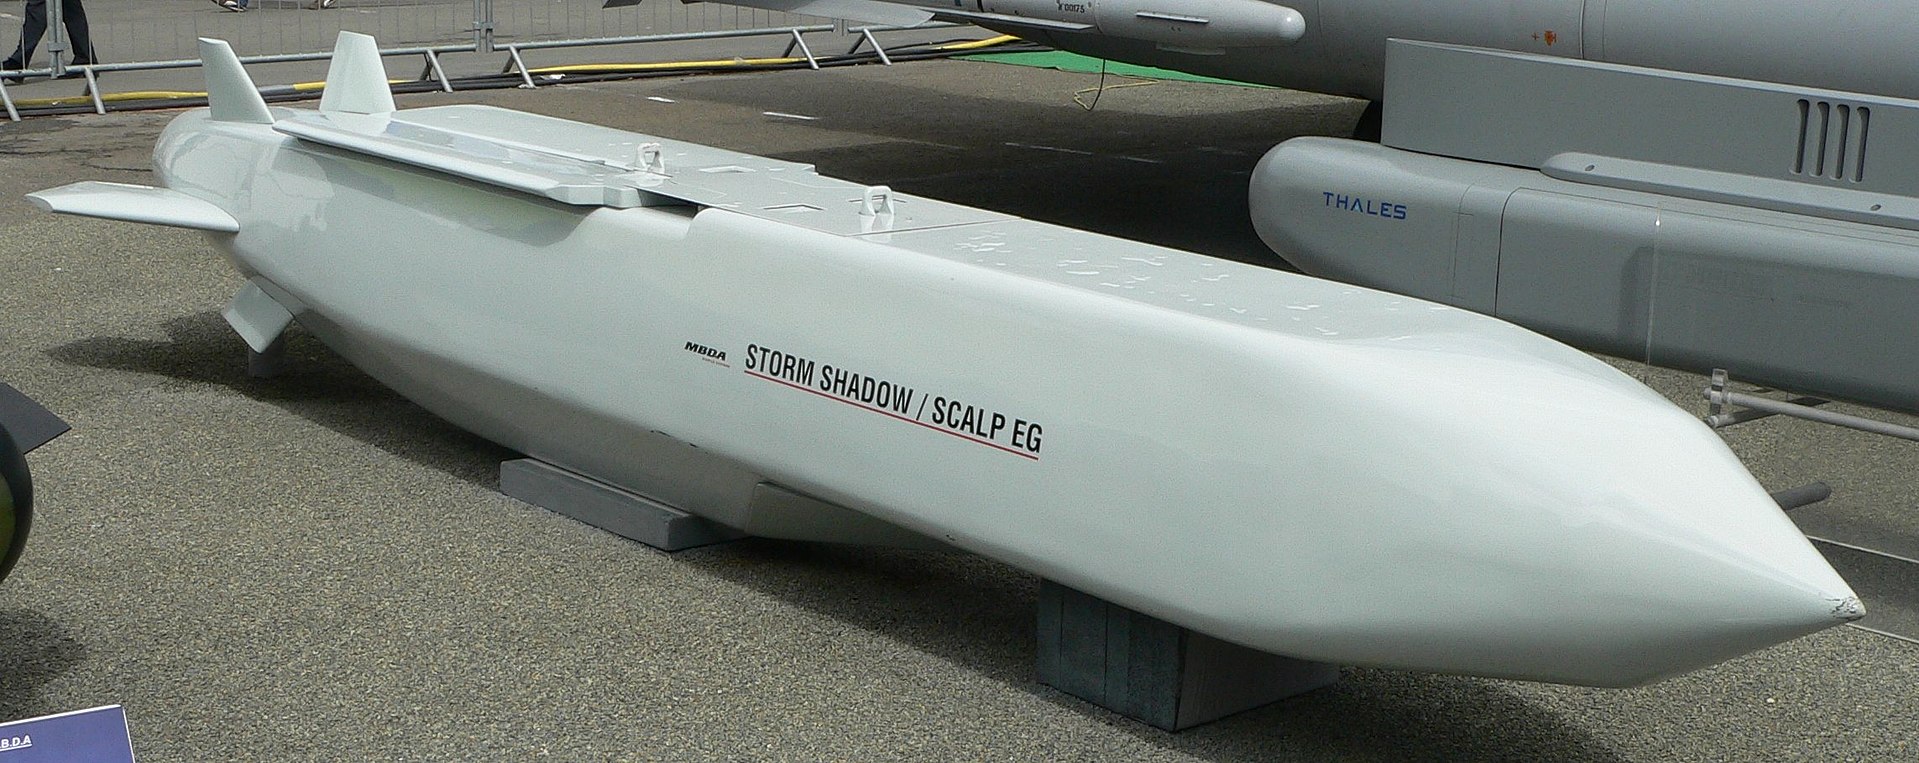 صاروخ ستورم شادو (ويكيبيديا)